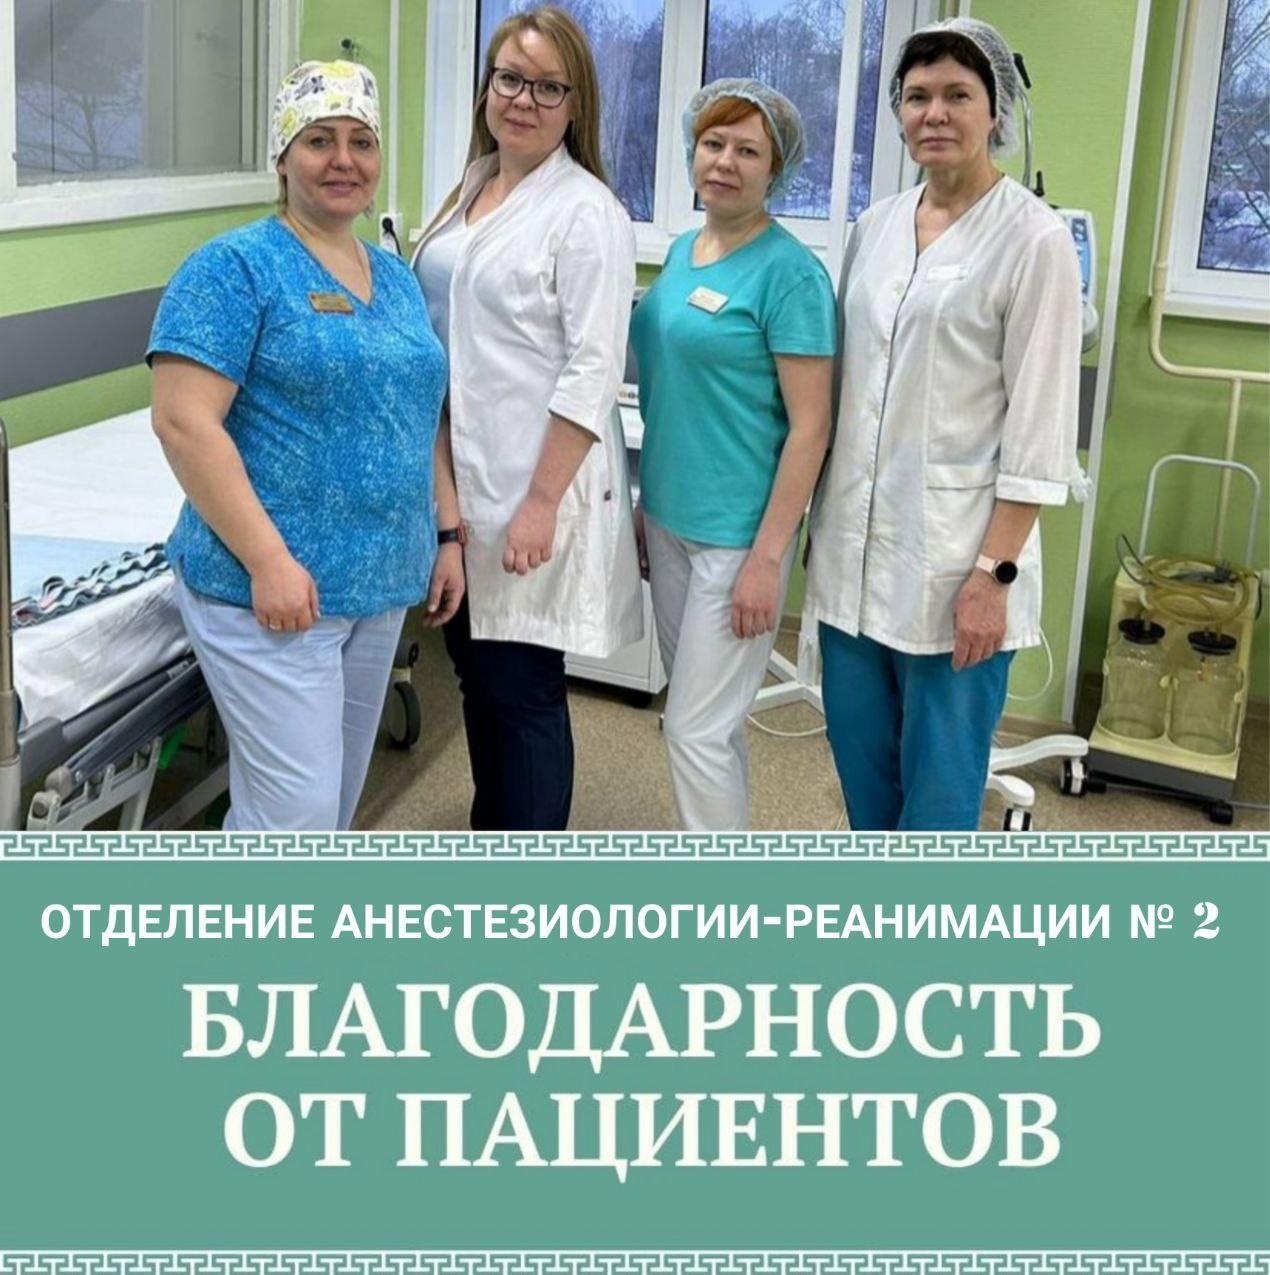 Мама маленького пациента Коломенской областной больницы поблагодарила сотрудников за спасение жизни сына